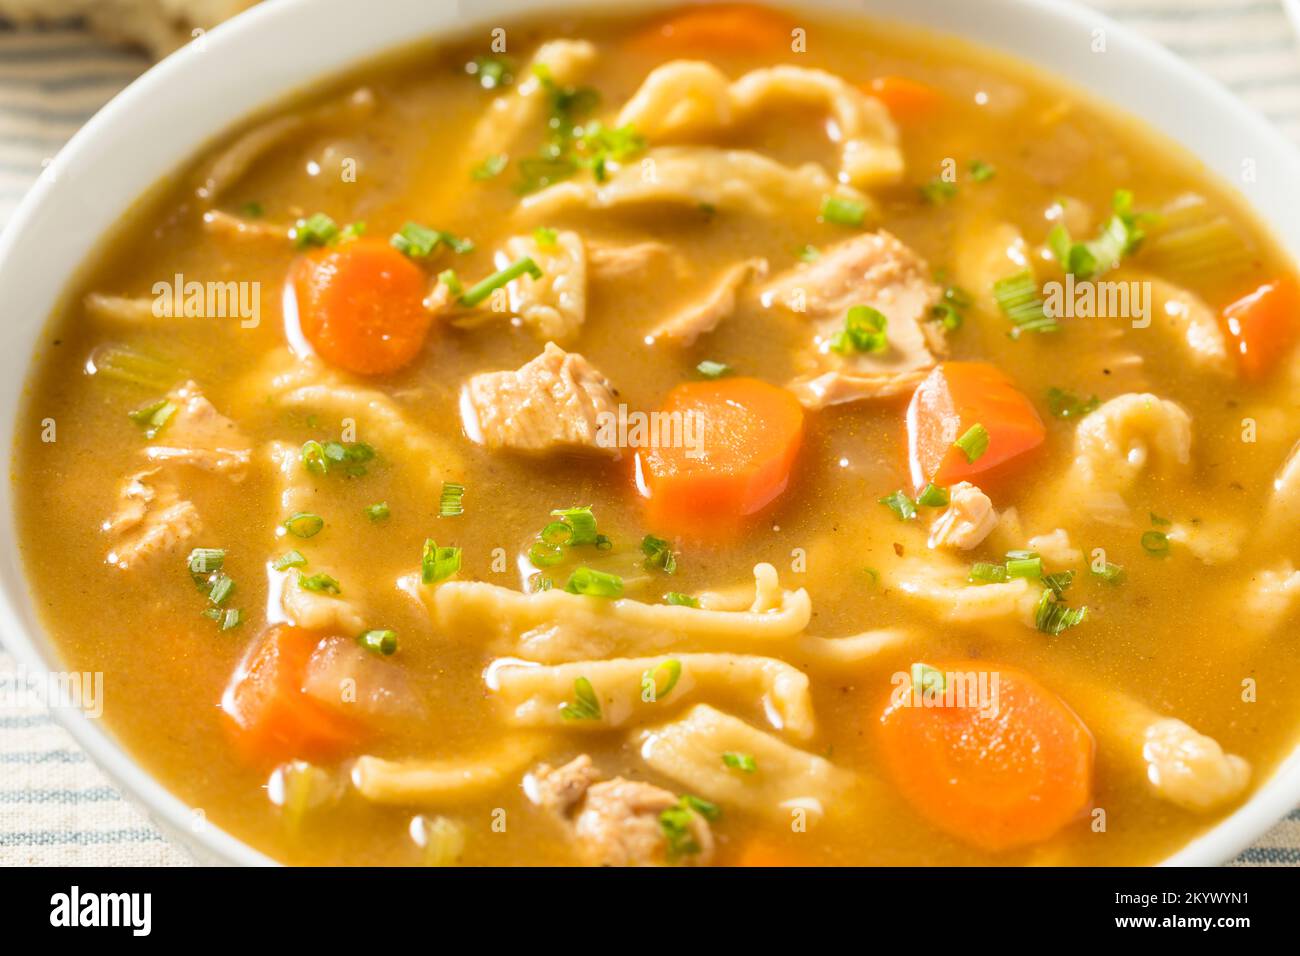 Sopa de pollo con fideos caseros con zanahoria y apio Foto de stock